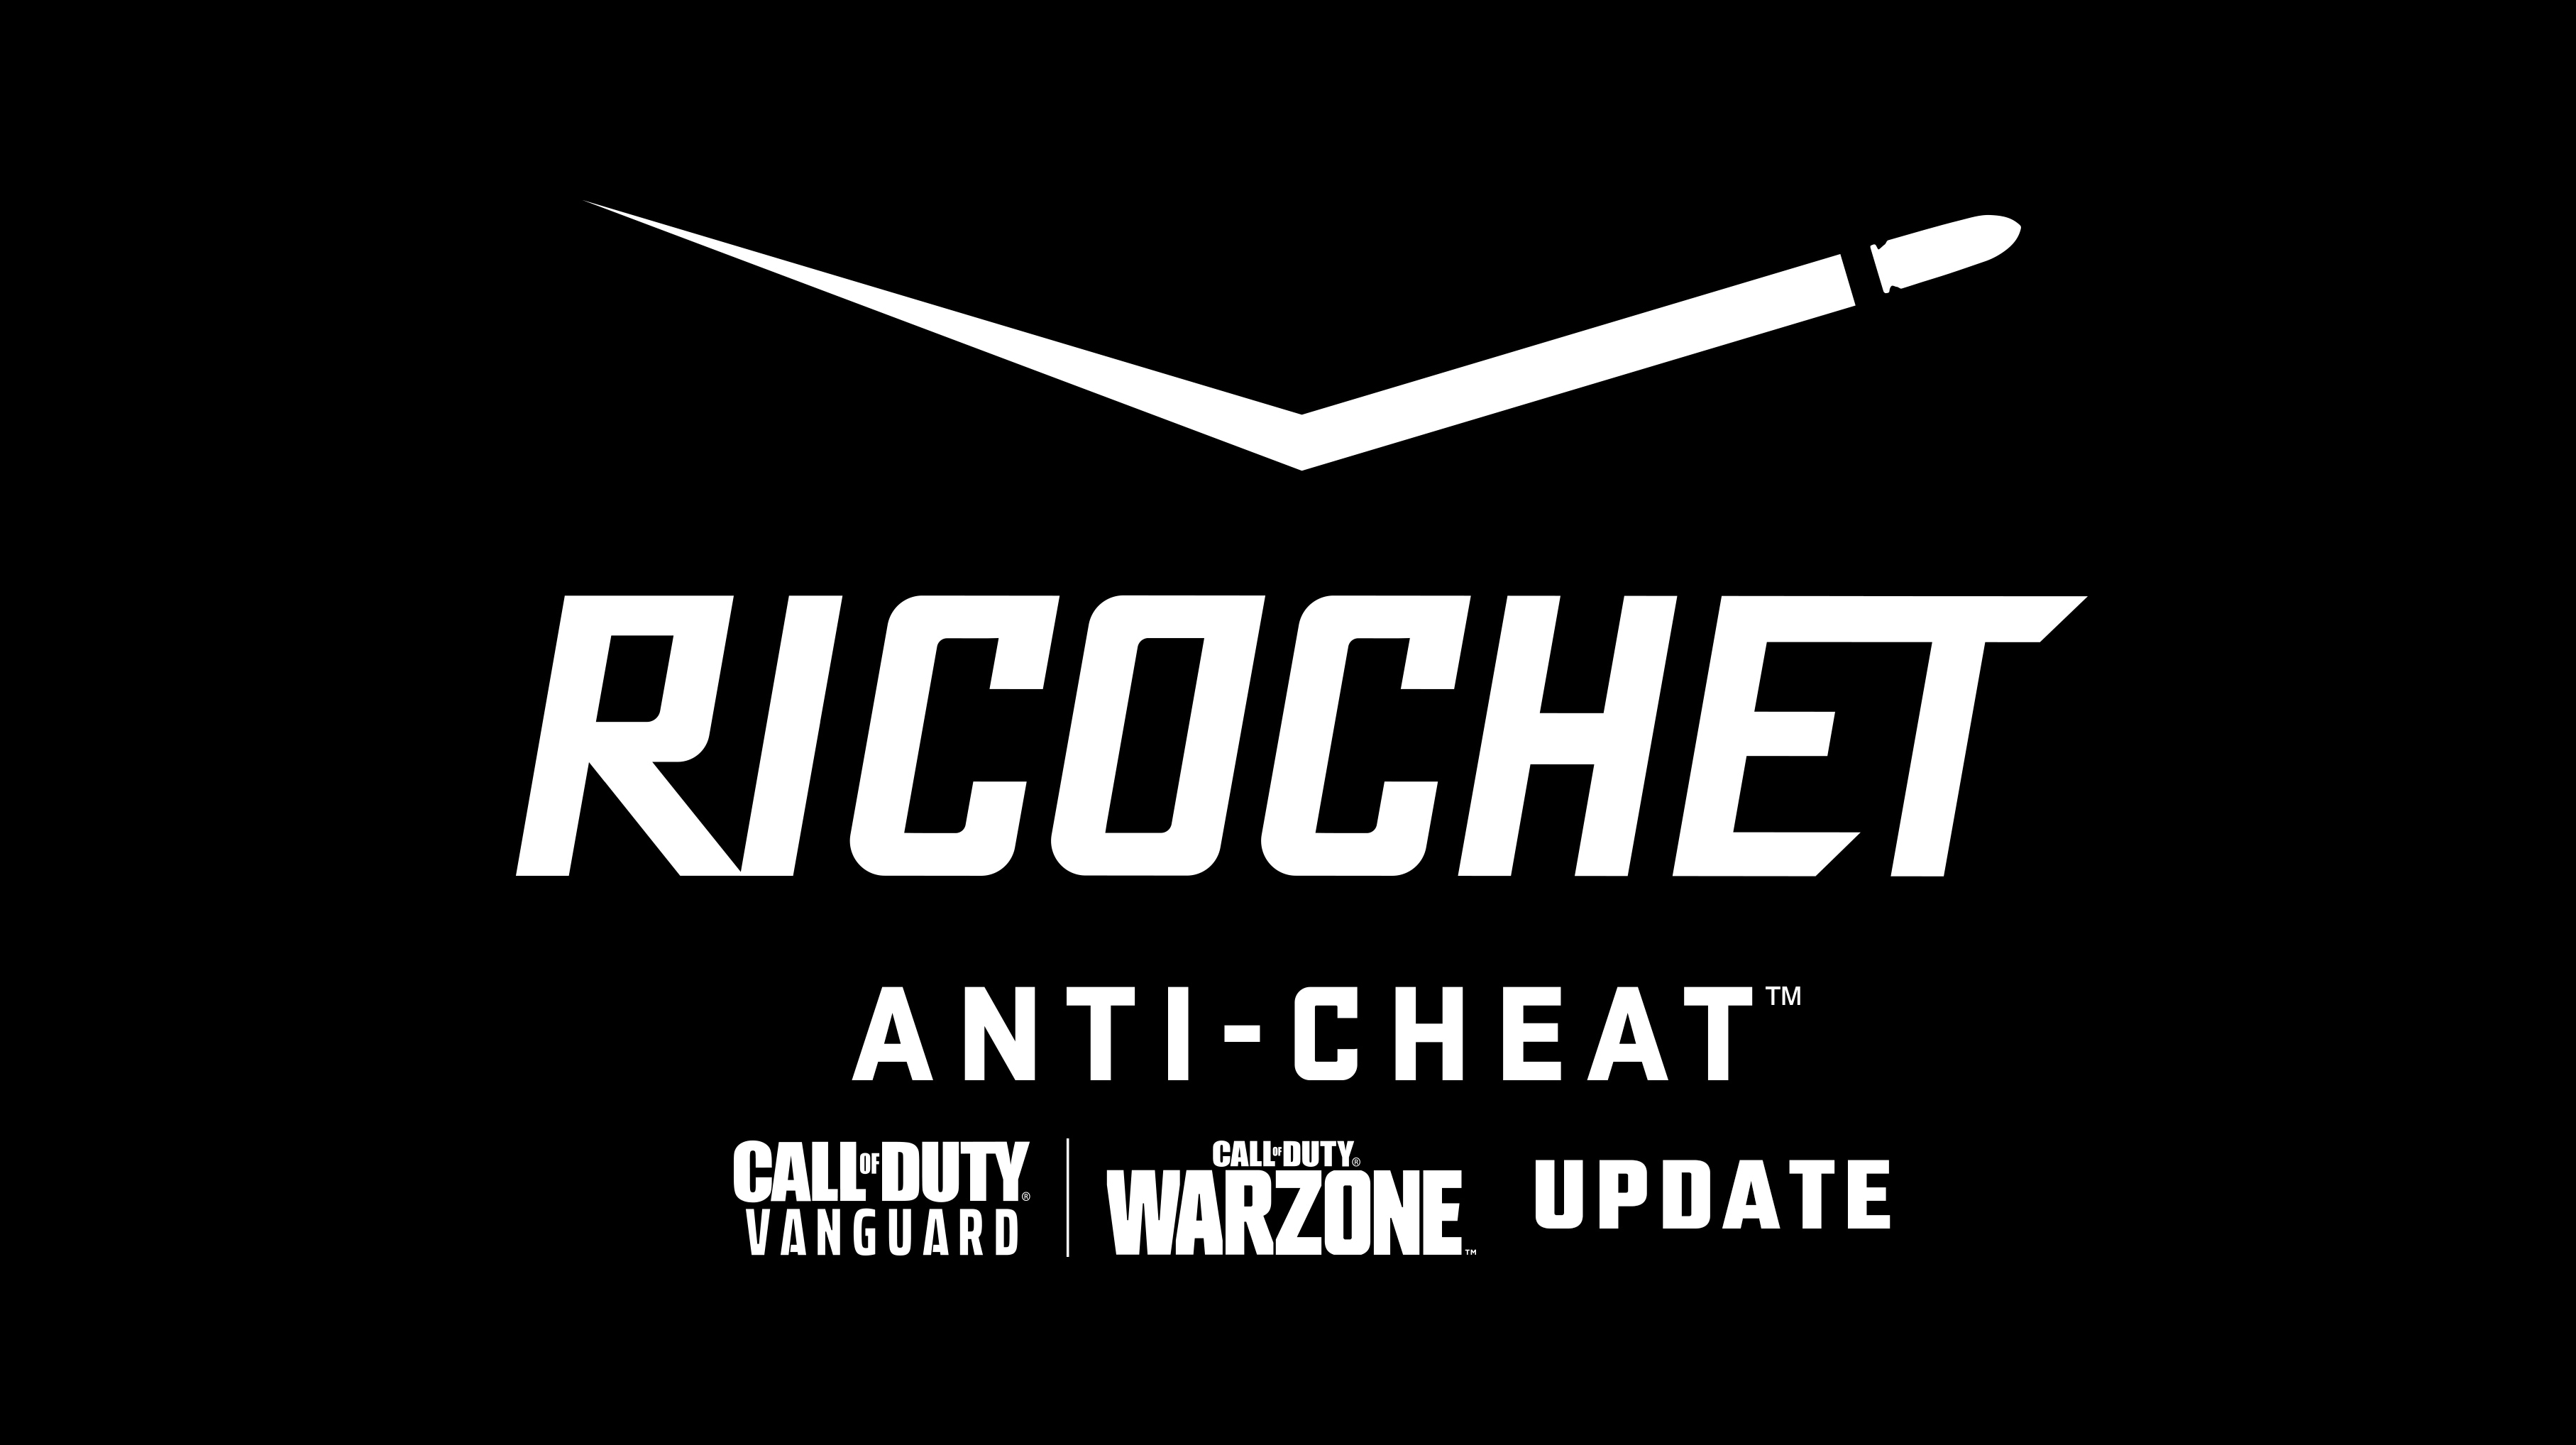 RICOCHET Anti-Cheat犯作弊系統進度報告 《先鋒》最新消息